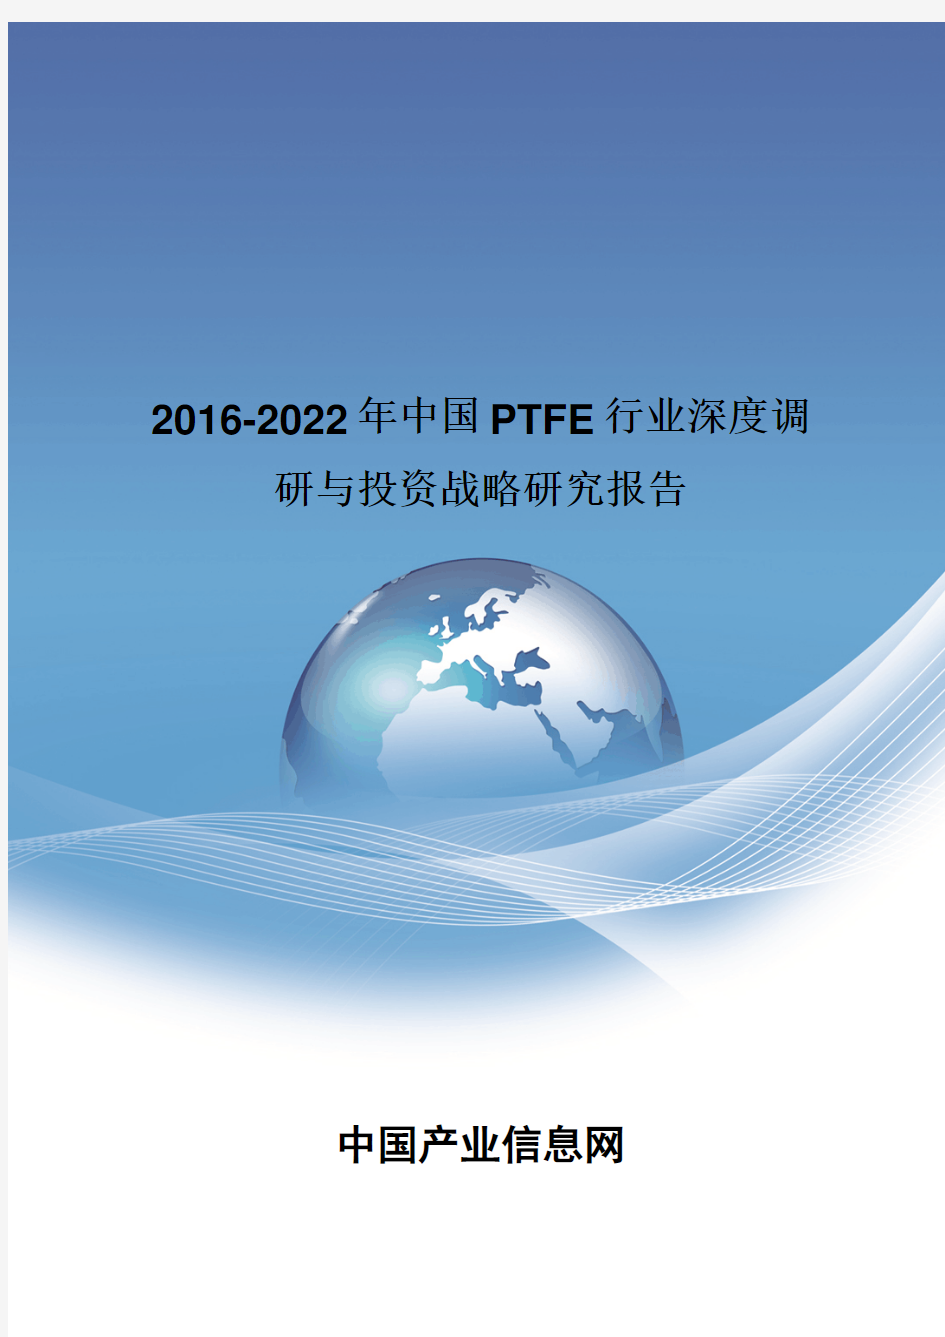 2016-2022年中国PTFE行业深度调研报告